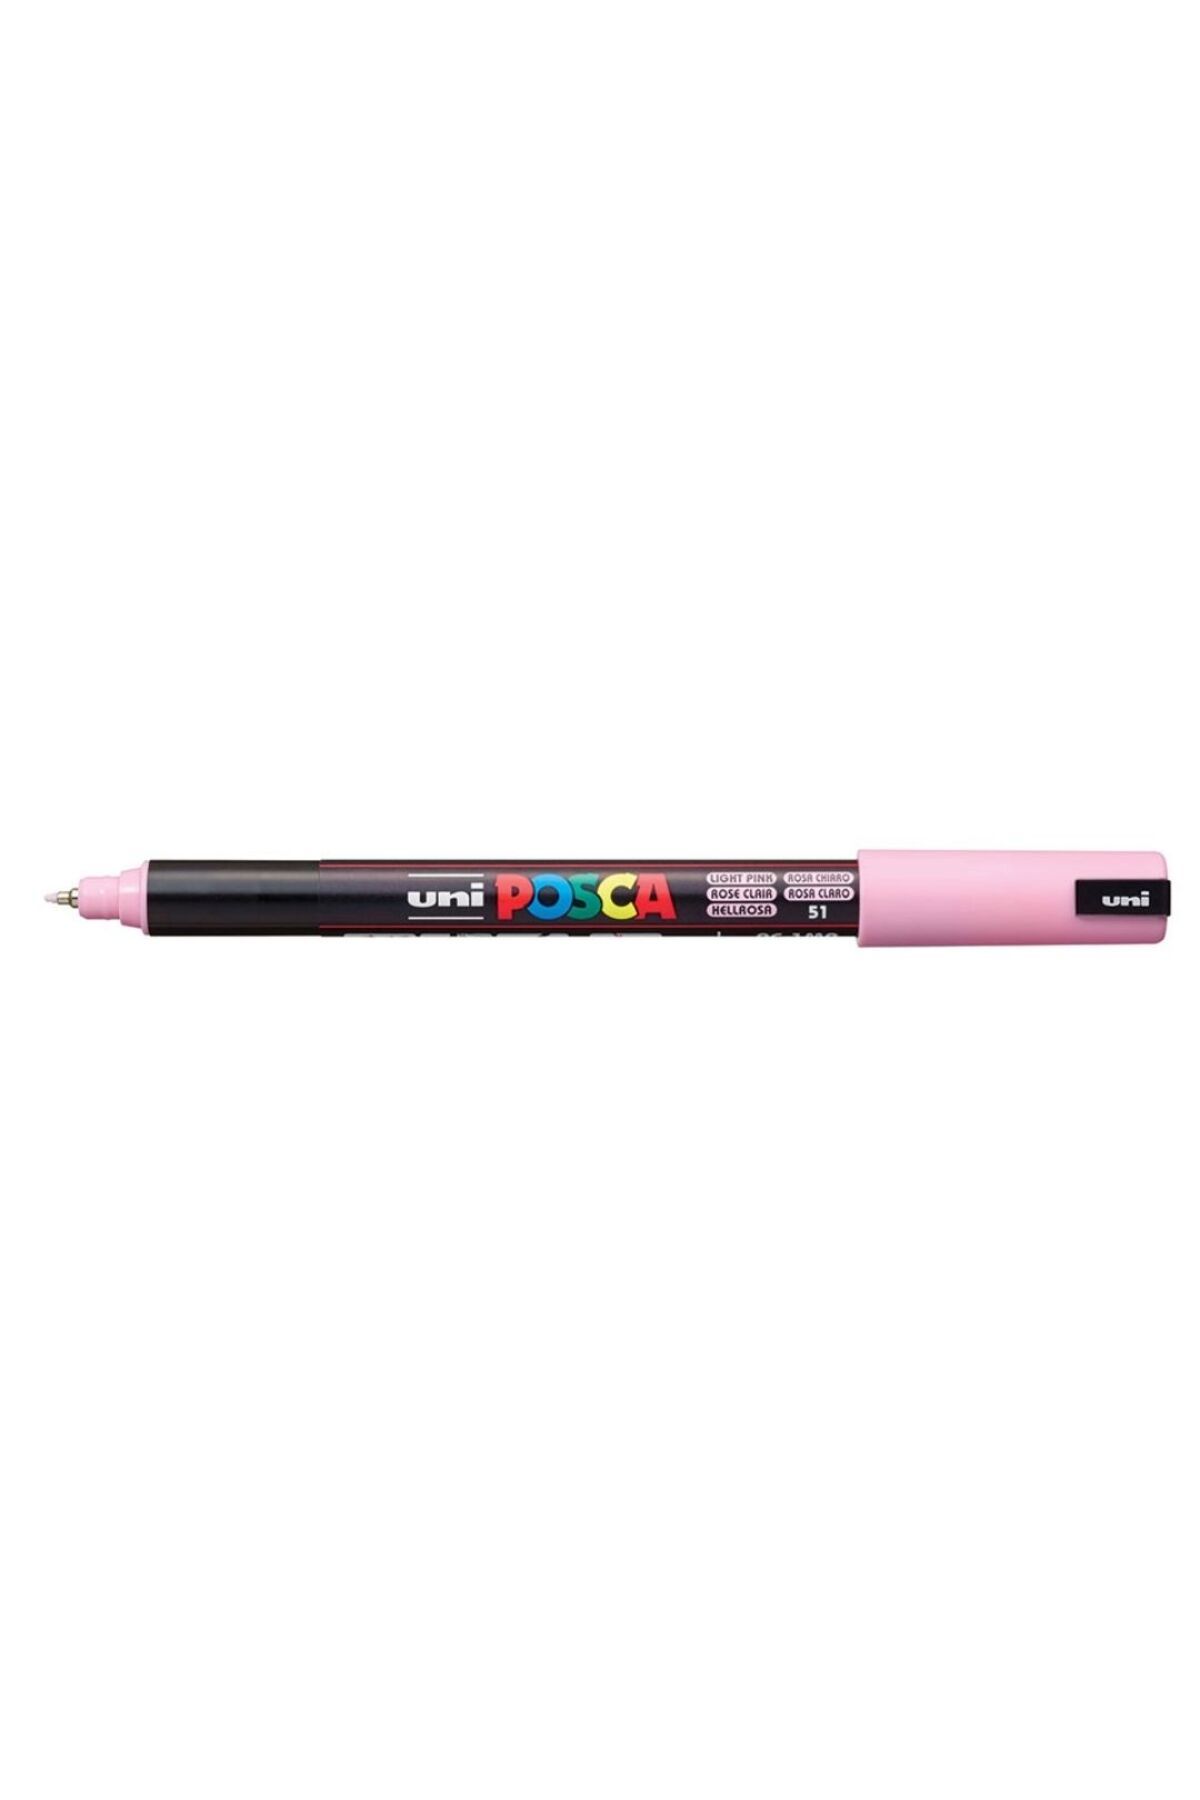 Uni Posca Marker Kalem Pc-1mr (0.7mm) Yeni Renk - Light Pink - Açık Pembe